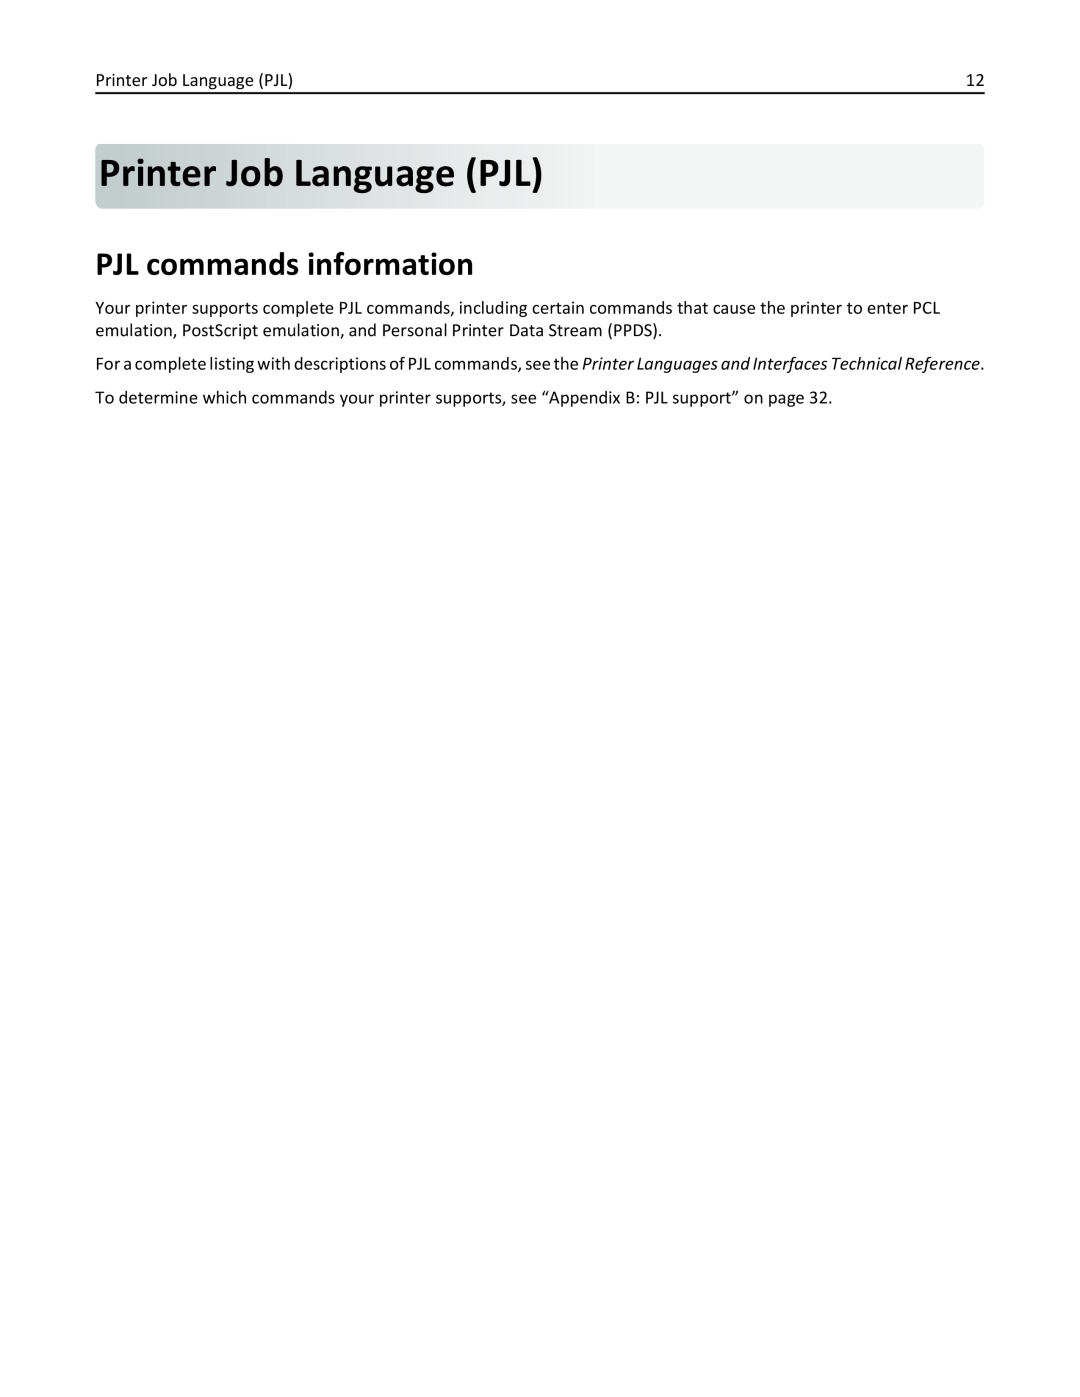 Lexmark 954DE, 952DE, 950DE, 954DHE, 952DTE manual Printer Job Language PJL, PJL commands information 